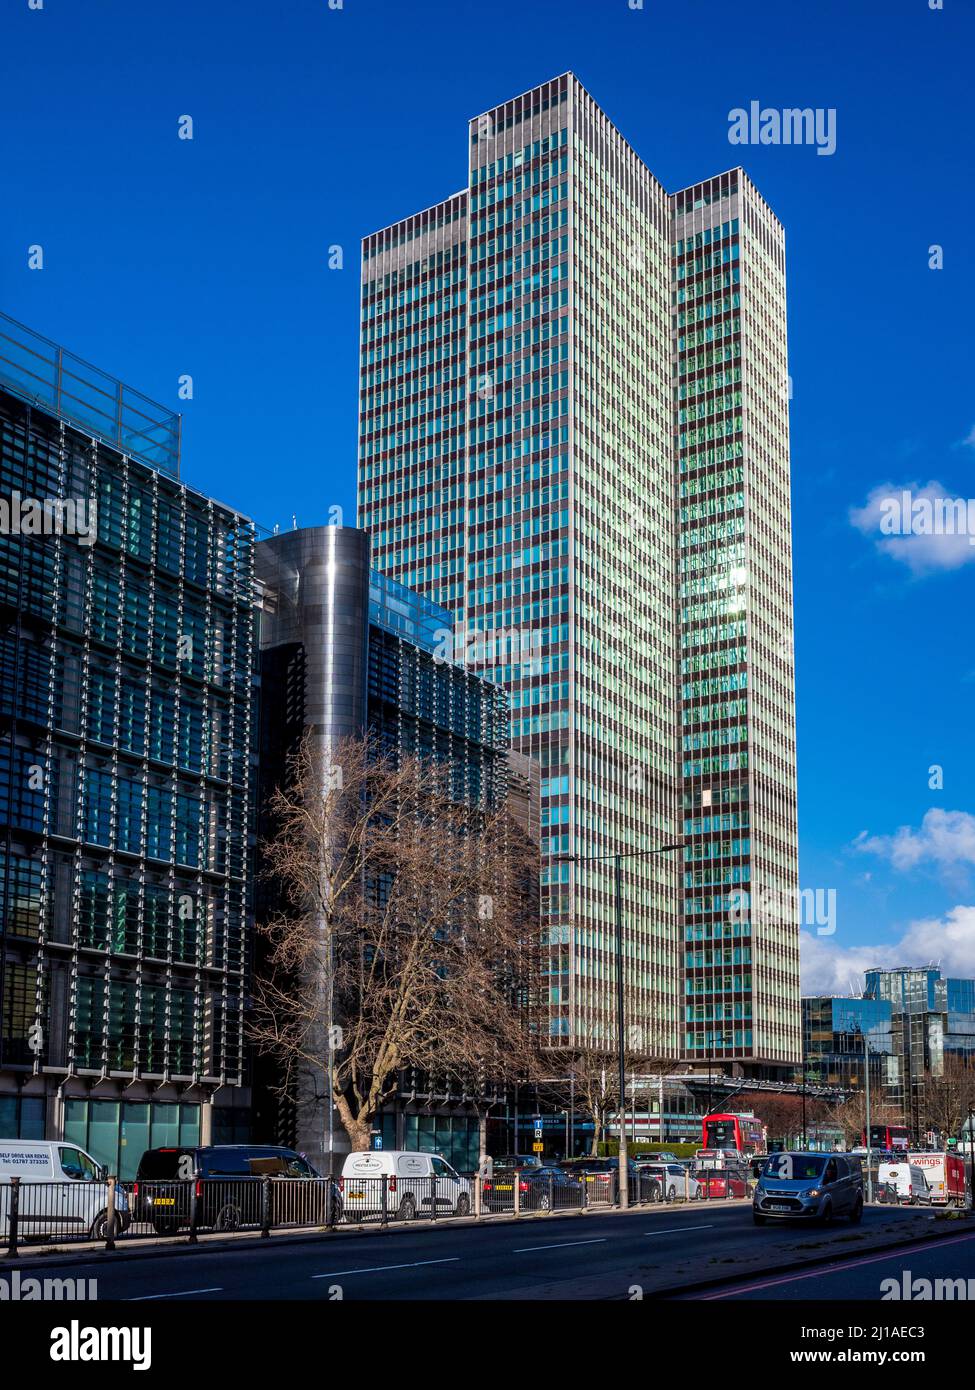 Euston Tower London: 36-stöckiger Hochhausblock im internationalen Stil an der Euston Road im Zentrum von London. Architekten Sidney Kaye Eric Firmin & Partners 1970. Stockfoto